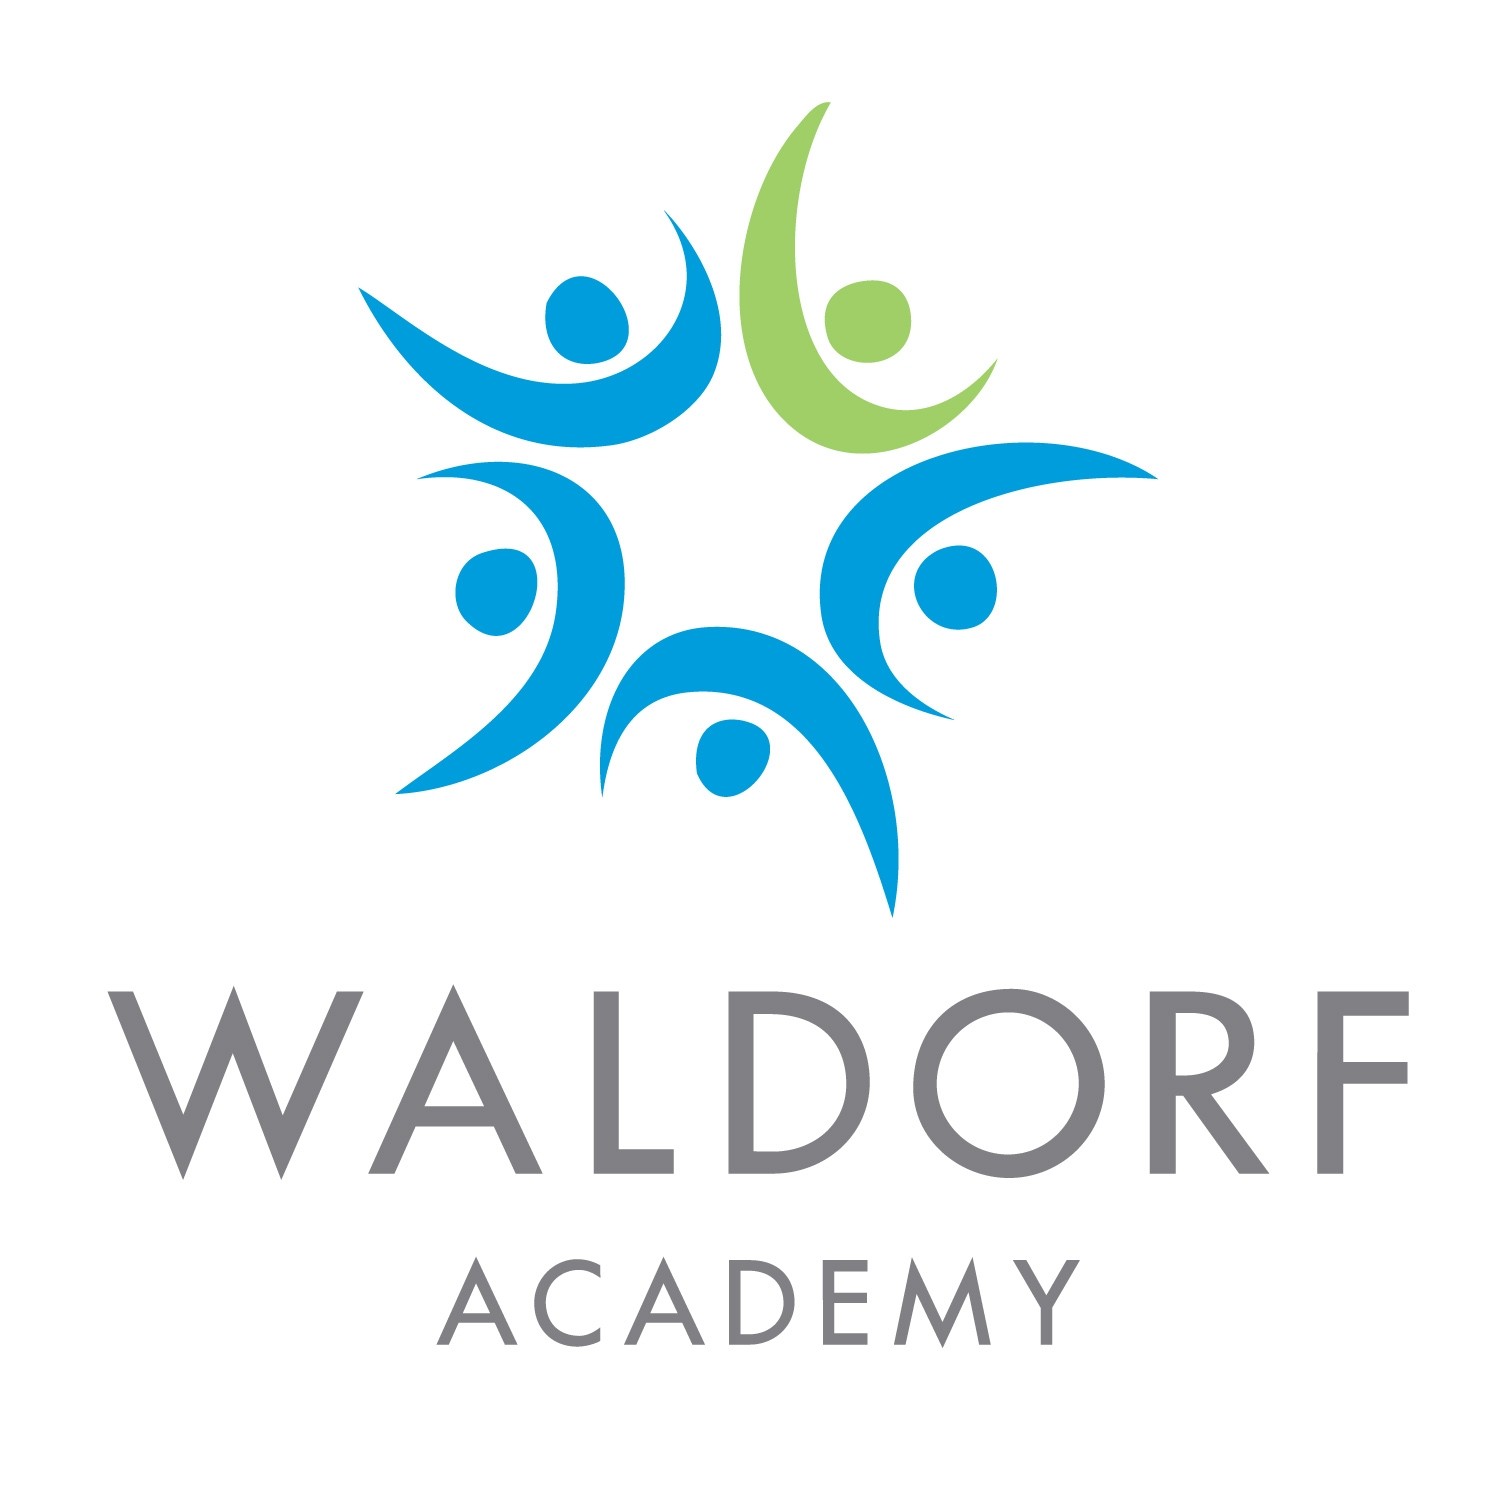 Waldorf Academy